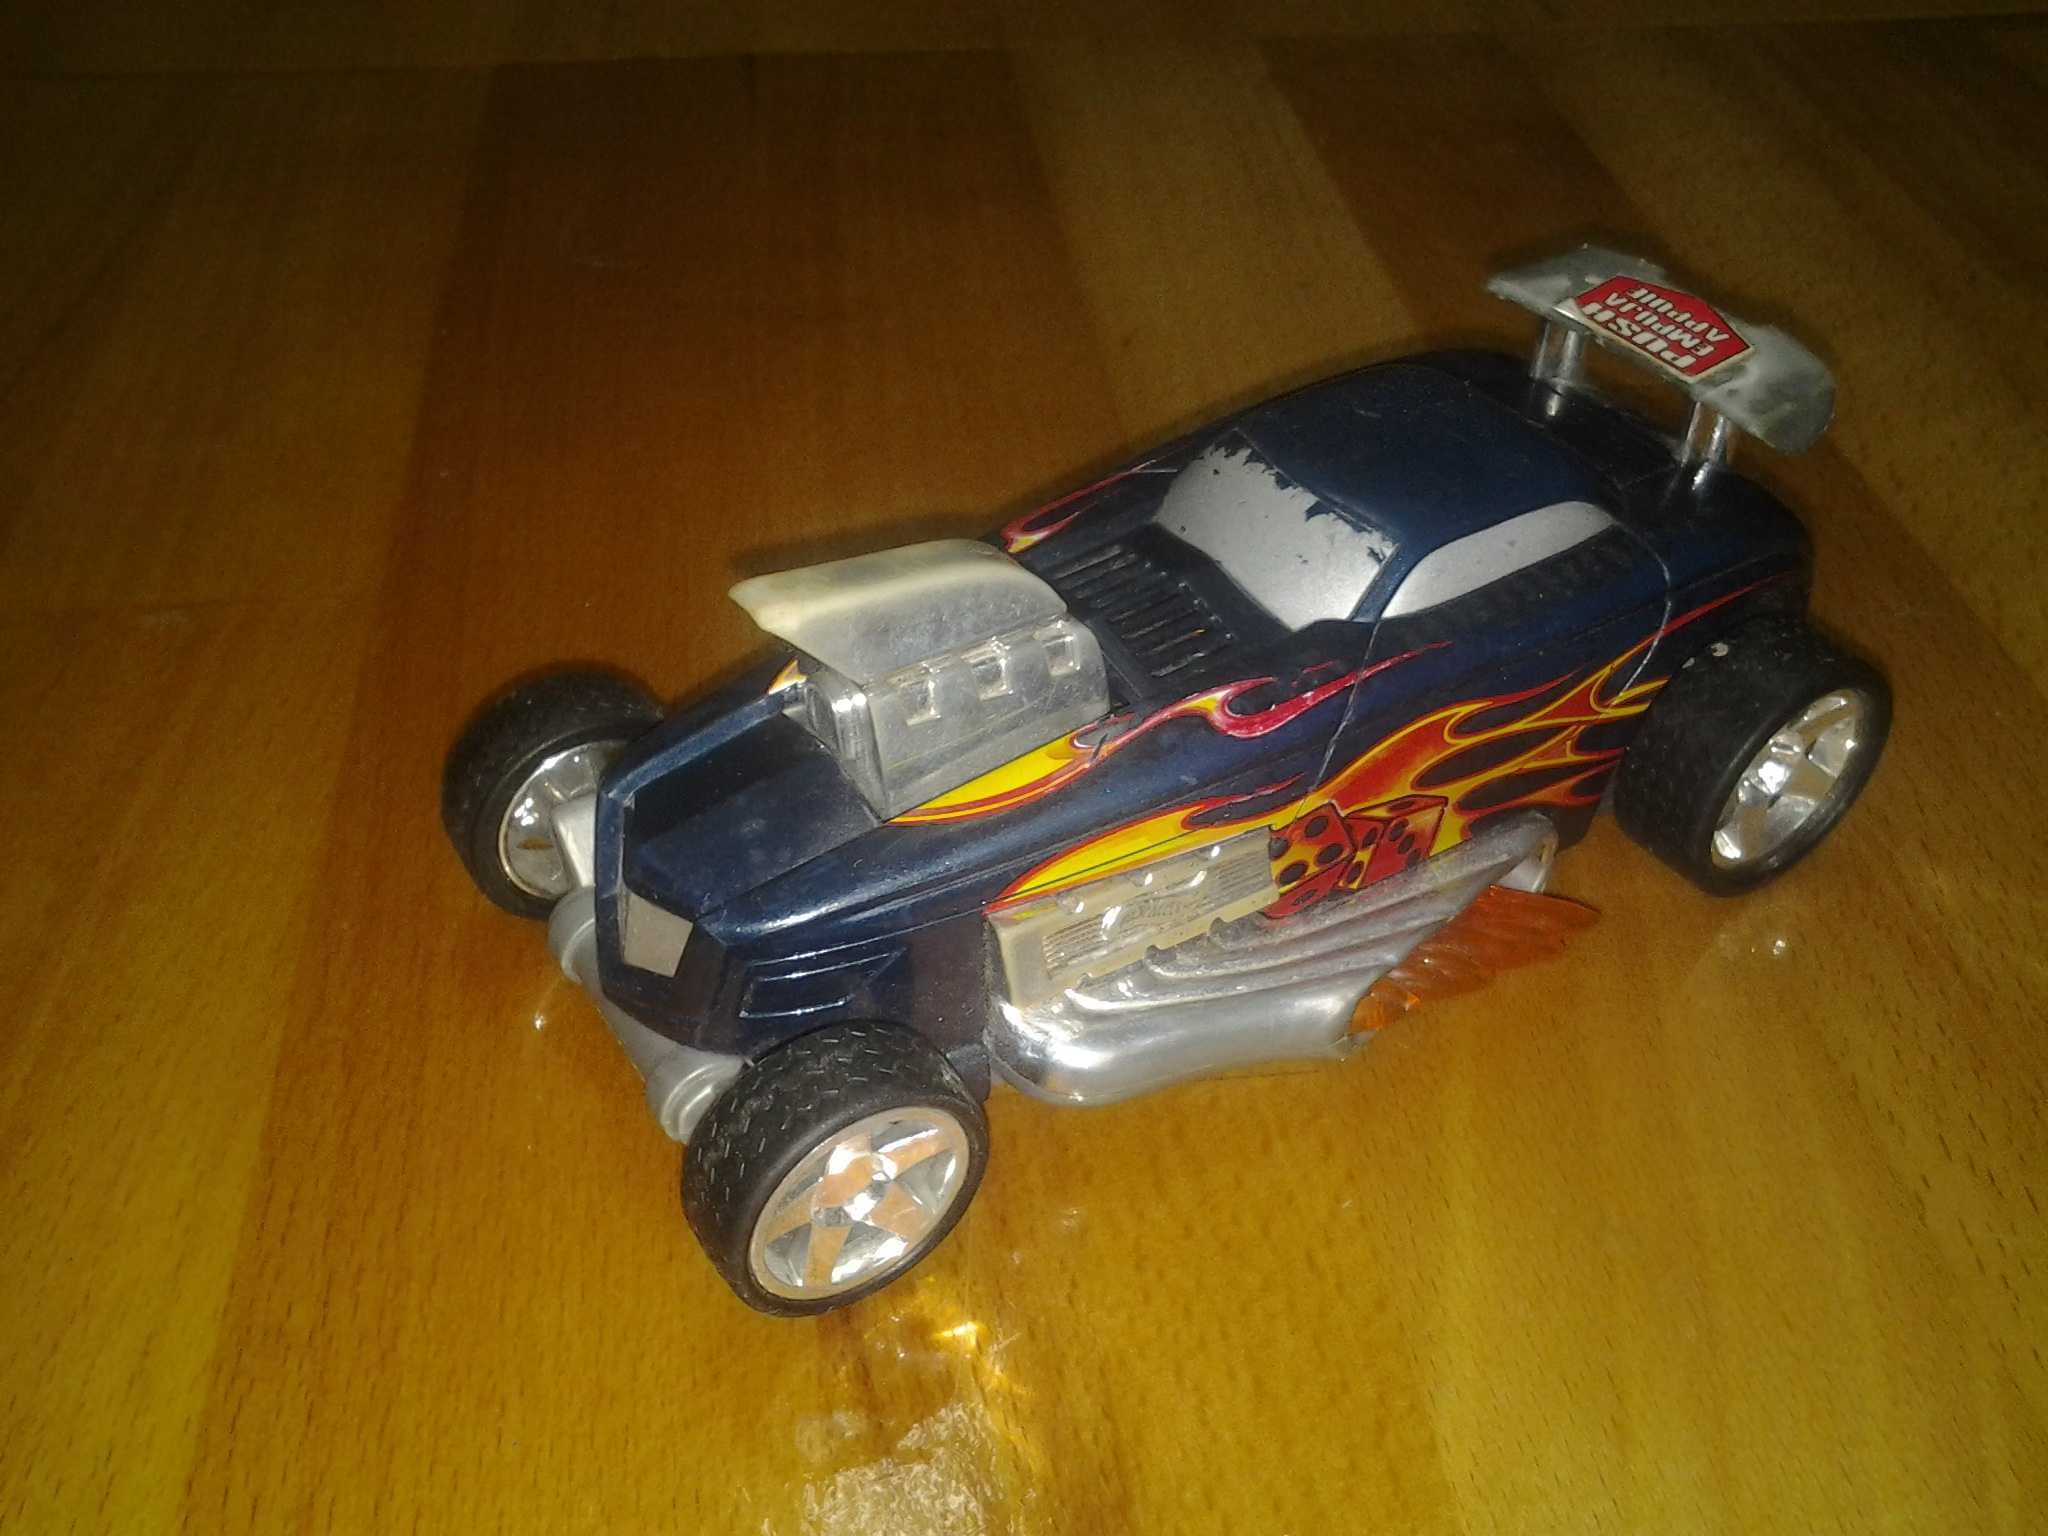 Hot Wheels by Mattel 14 cm jucarie masinuta copii